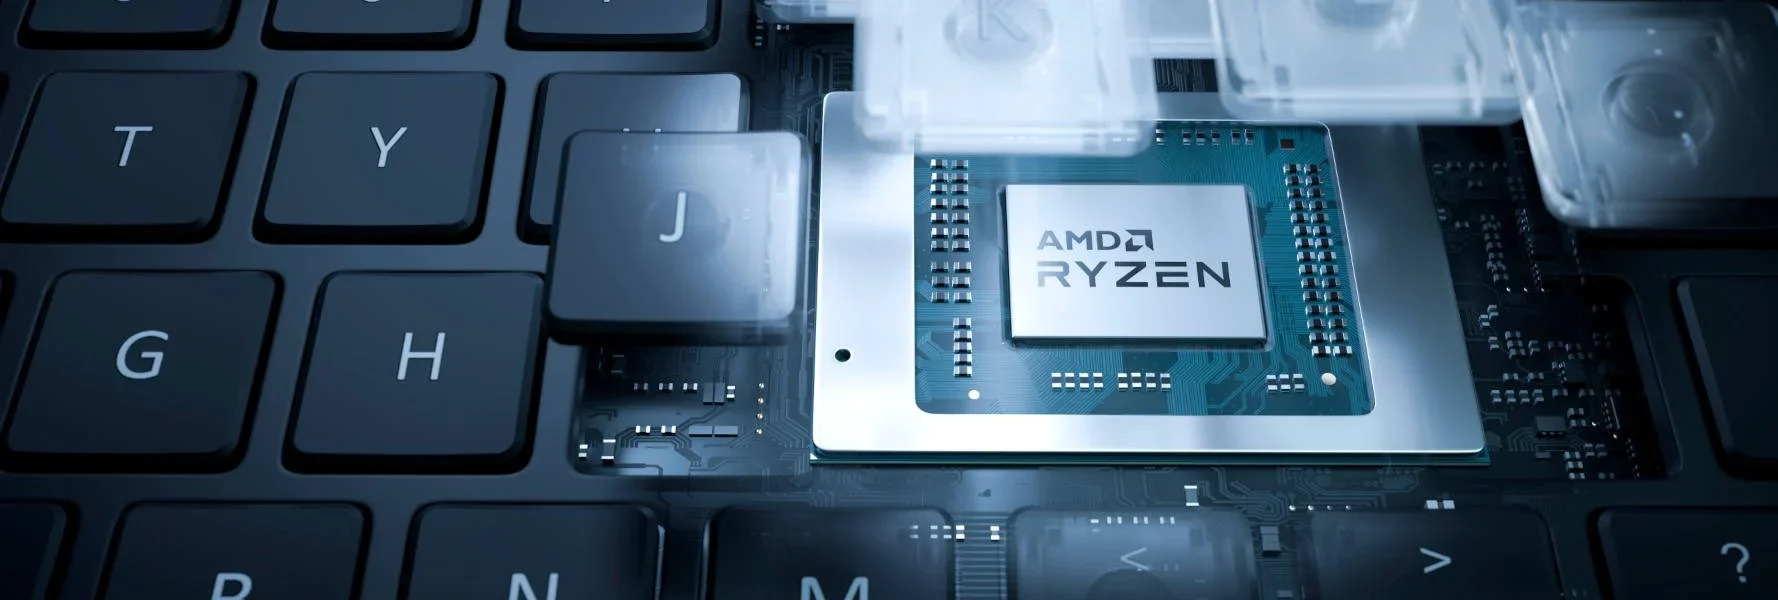 Oznaczenia procesorów Intel i AMD – jak je odczytywać?